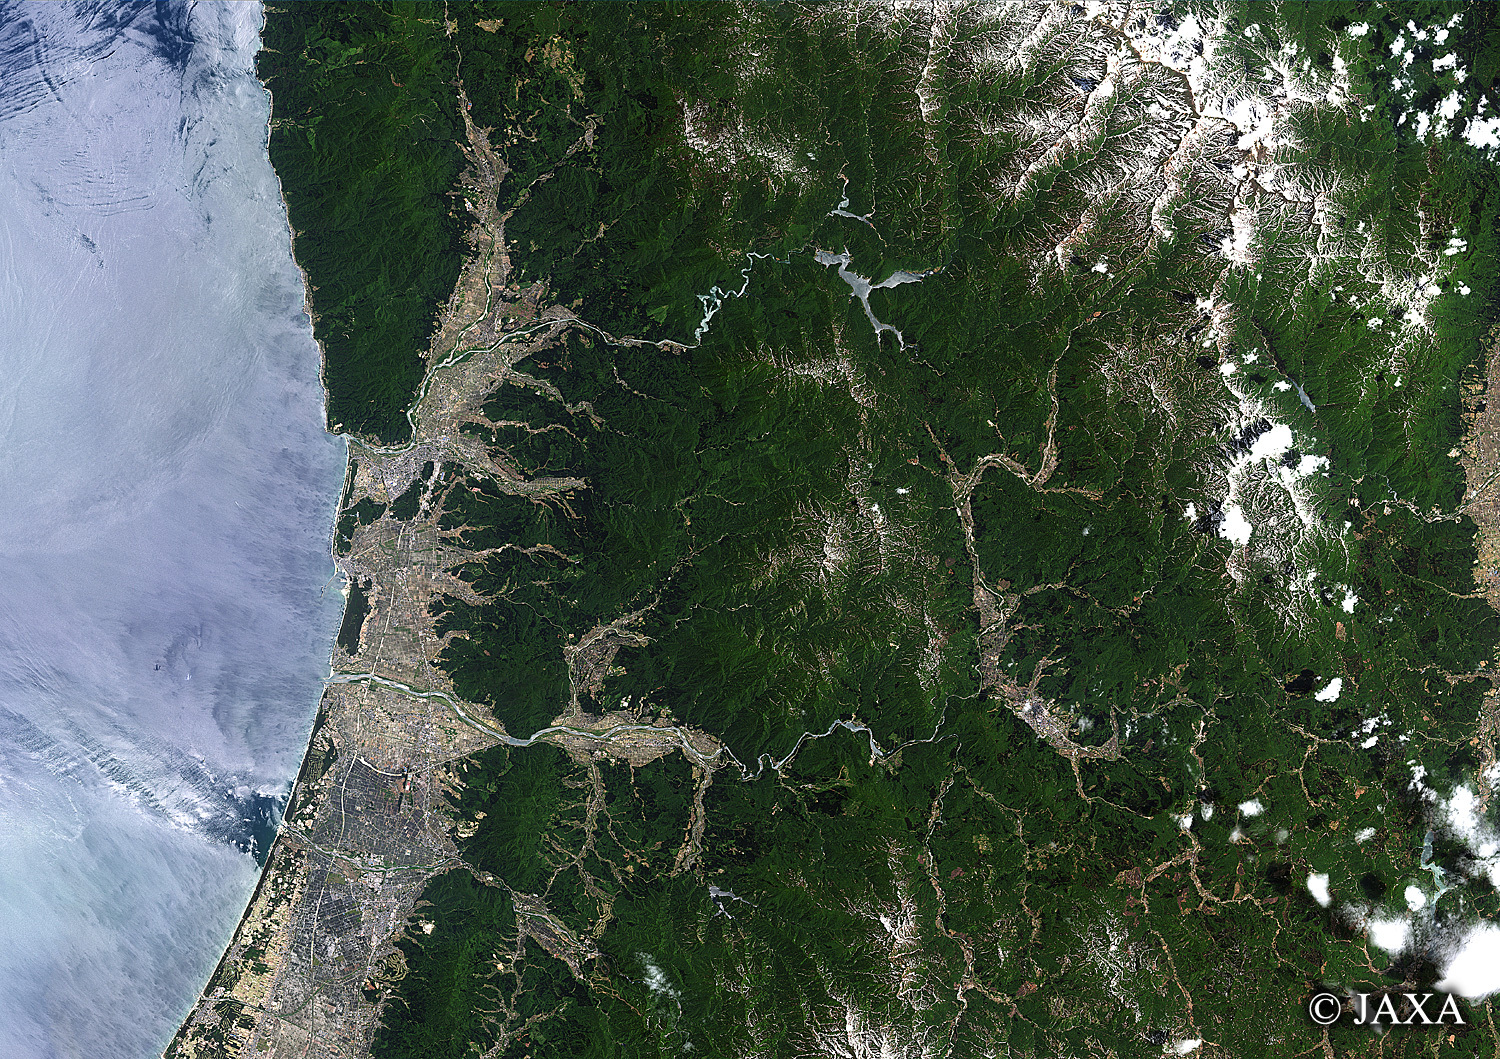 だいちから見た日本の都市 荒川:衛星画像